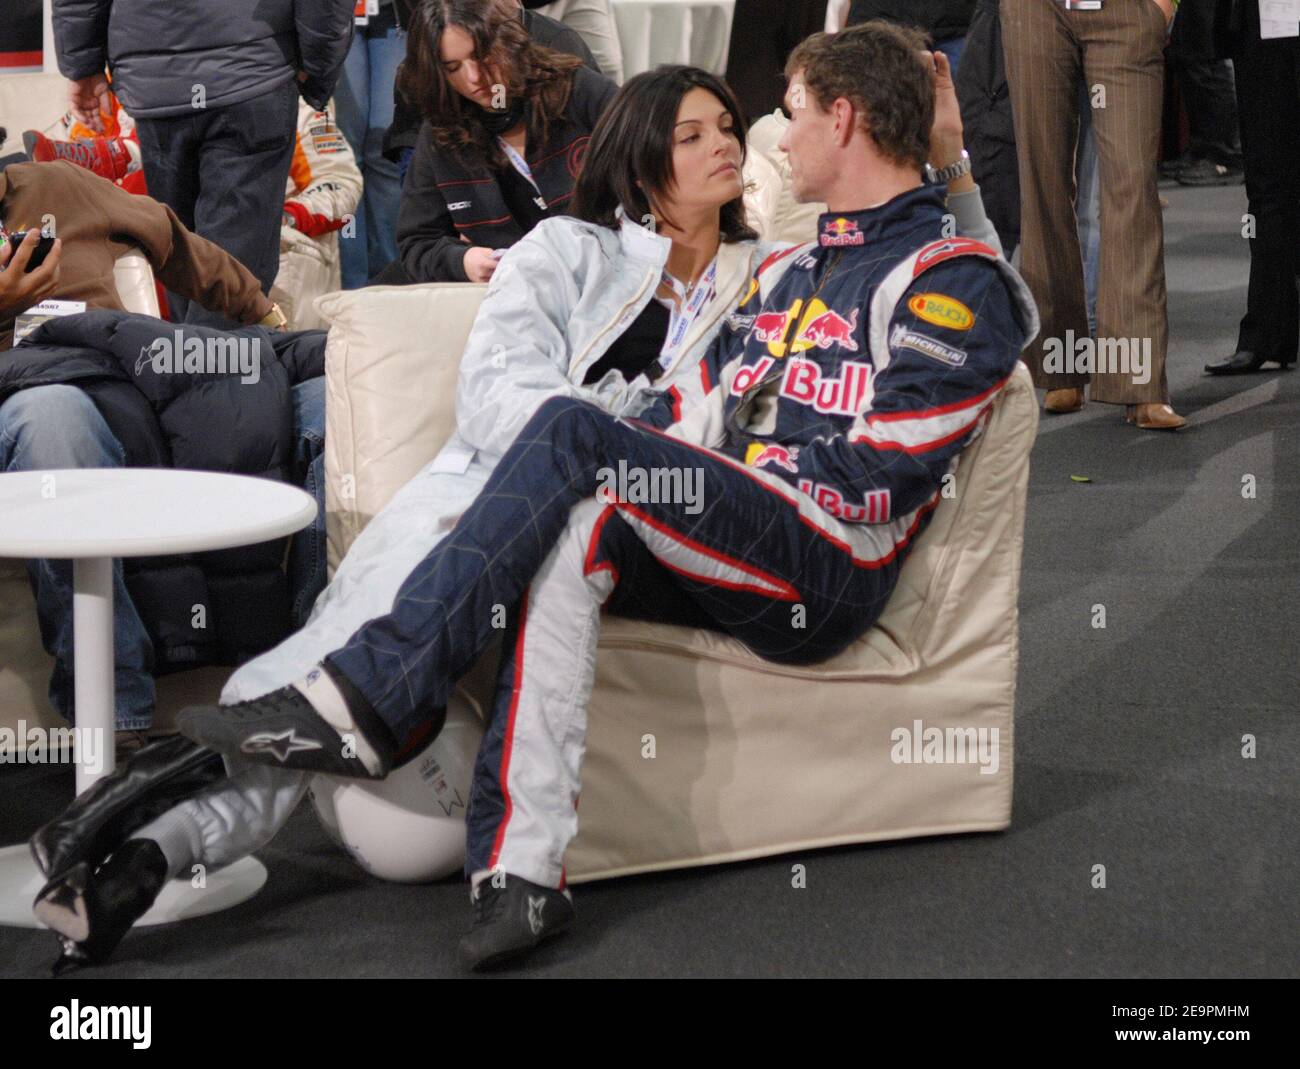 David Coulthard, pilote de F1 écossais, et son épouse Karen Minier, ont participé au salon des pilotes lors de la course des champions qui s'est tenue au Stade de France à Saint-Denis, près de Paris, en France, le 16 décembre 2006. Photo de Nicolas Khayat/Cameleon/ABACAPRESS.COM Banque D'Images